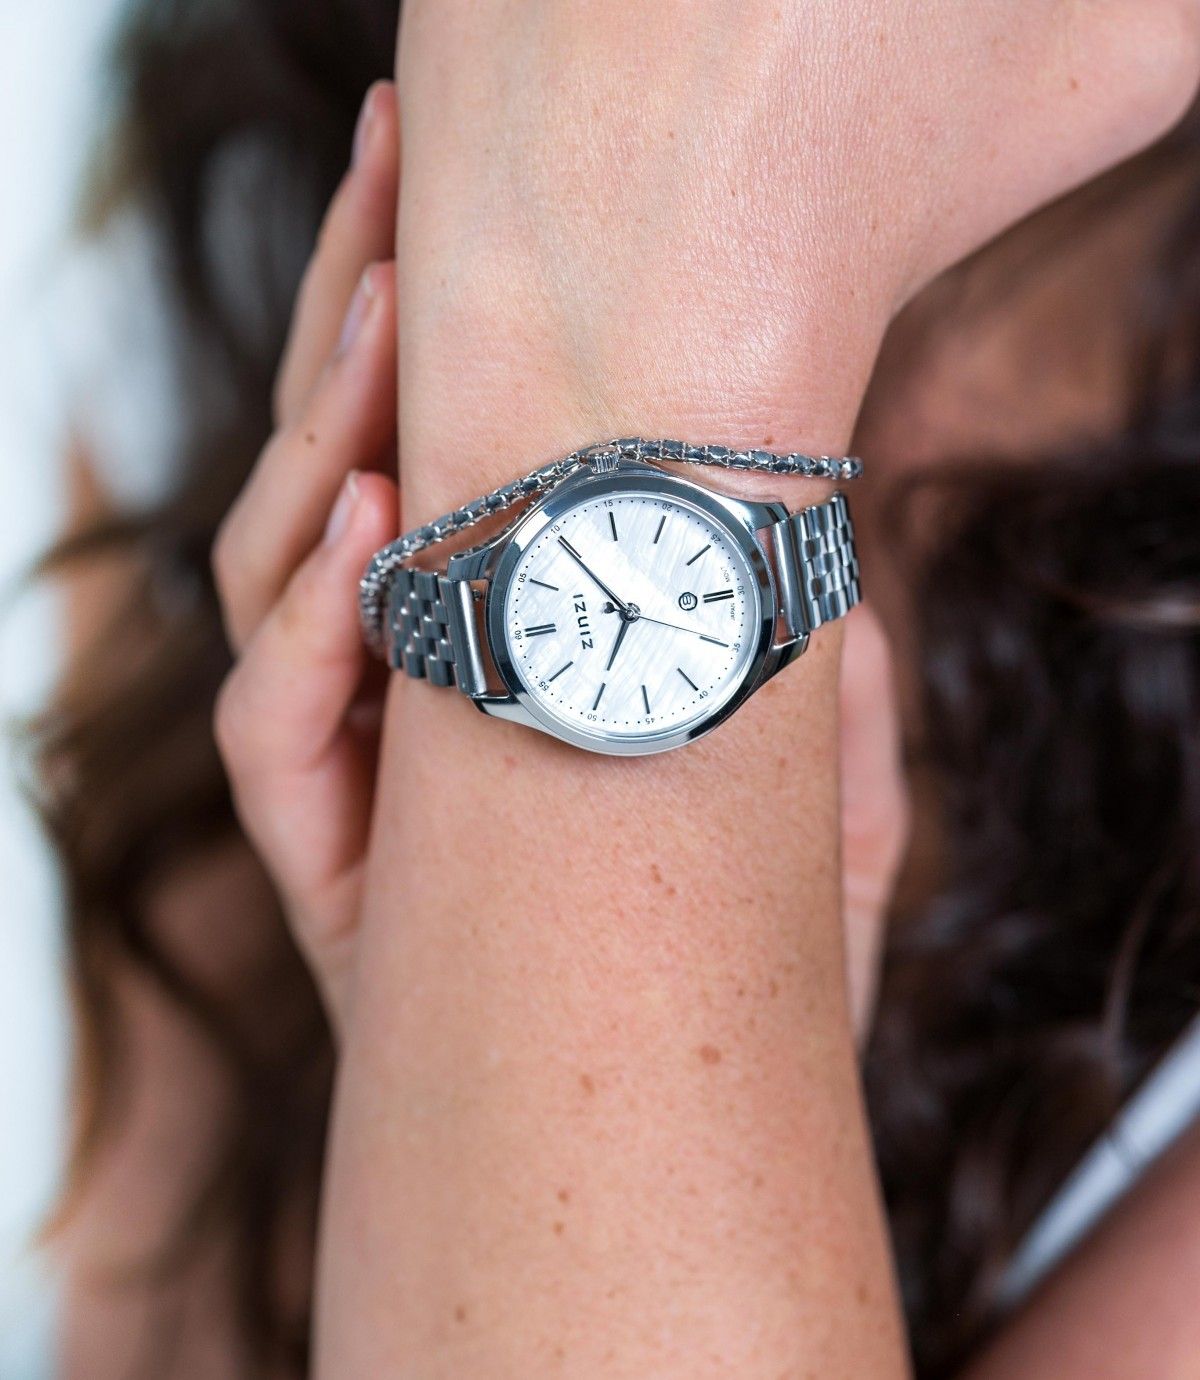 Zinzi horloge ZIW1017 Classy 34mm + gratis armband t.w.v. €29,95, exclusief en kwalitatief hoogwaardig. Ontdek nu!